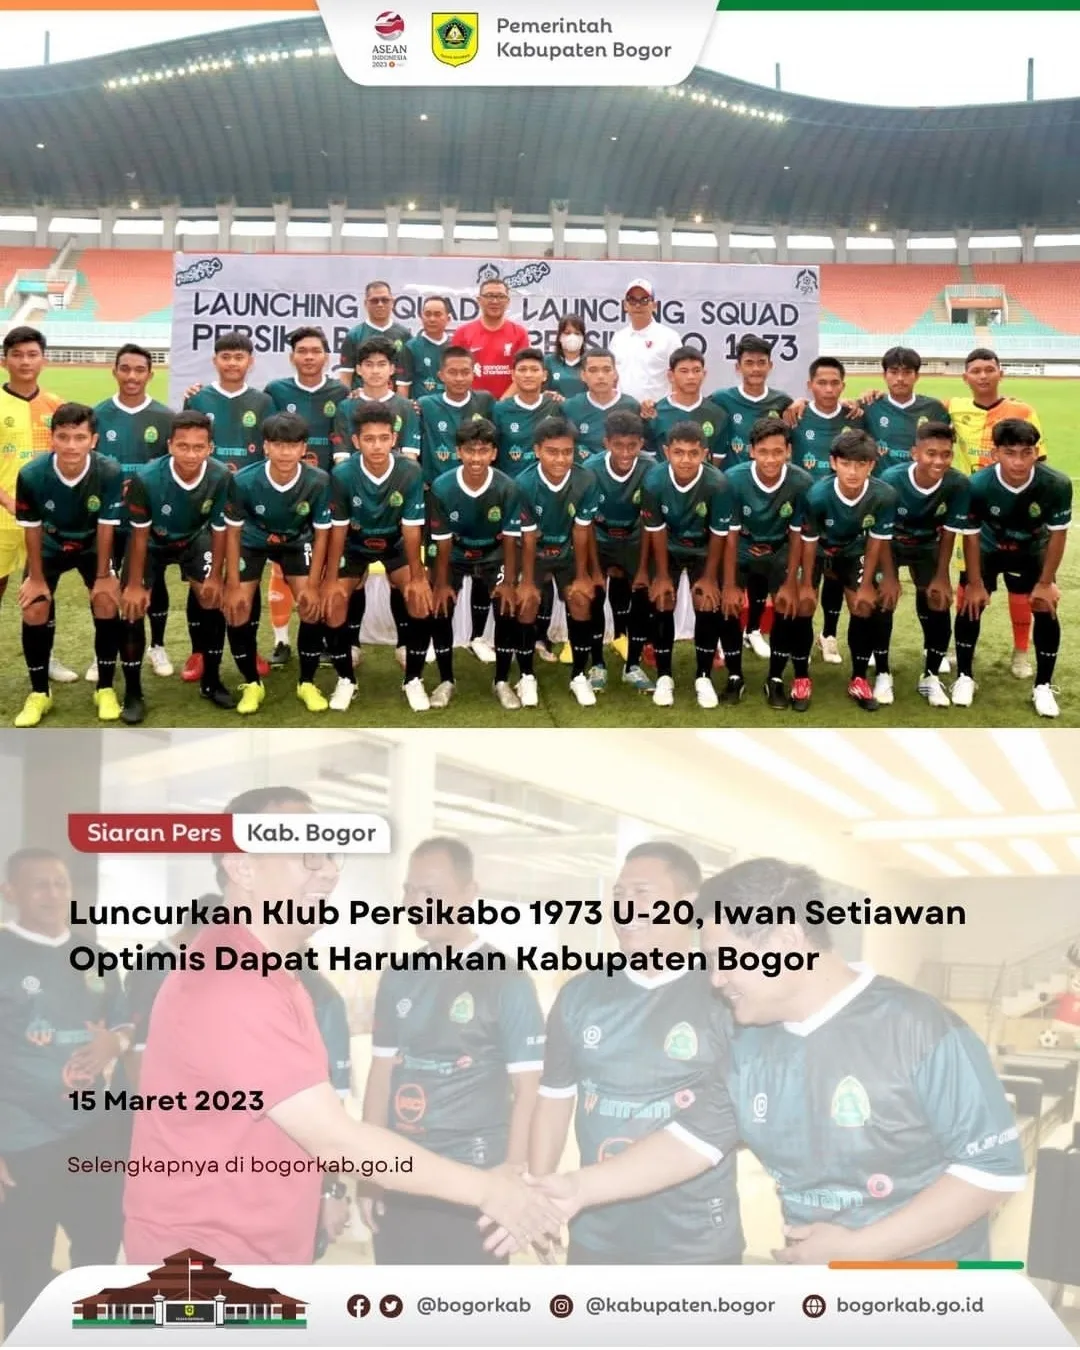 Luncurkan Klub Persikabo 1973 U-20, Iwan Setiawan Optimis Dapat Harumkan Kabupaten Bogor